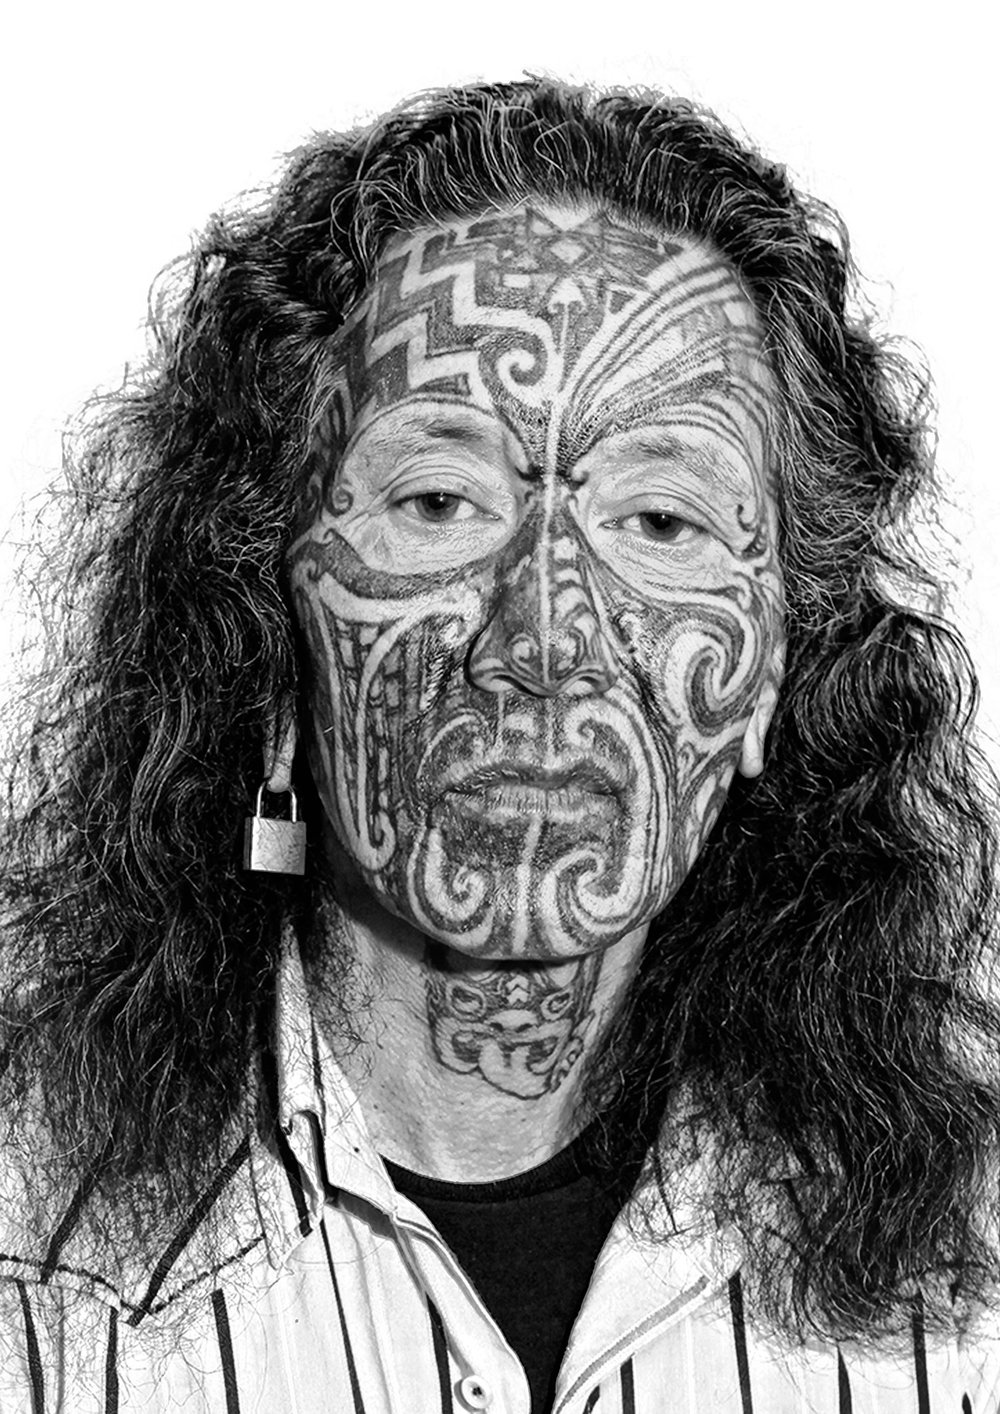 nell'immagine è rappresentato un uomo con tatuaggi maori tribali in viso